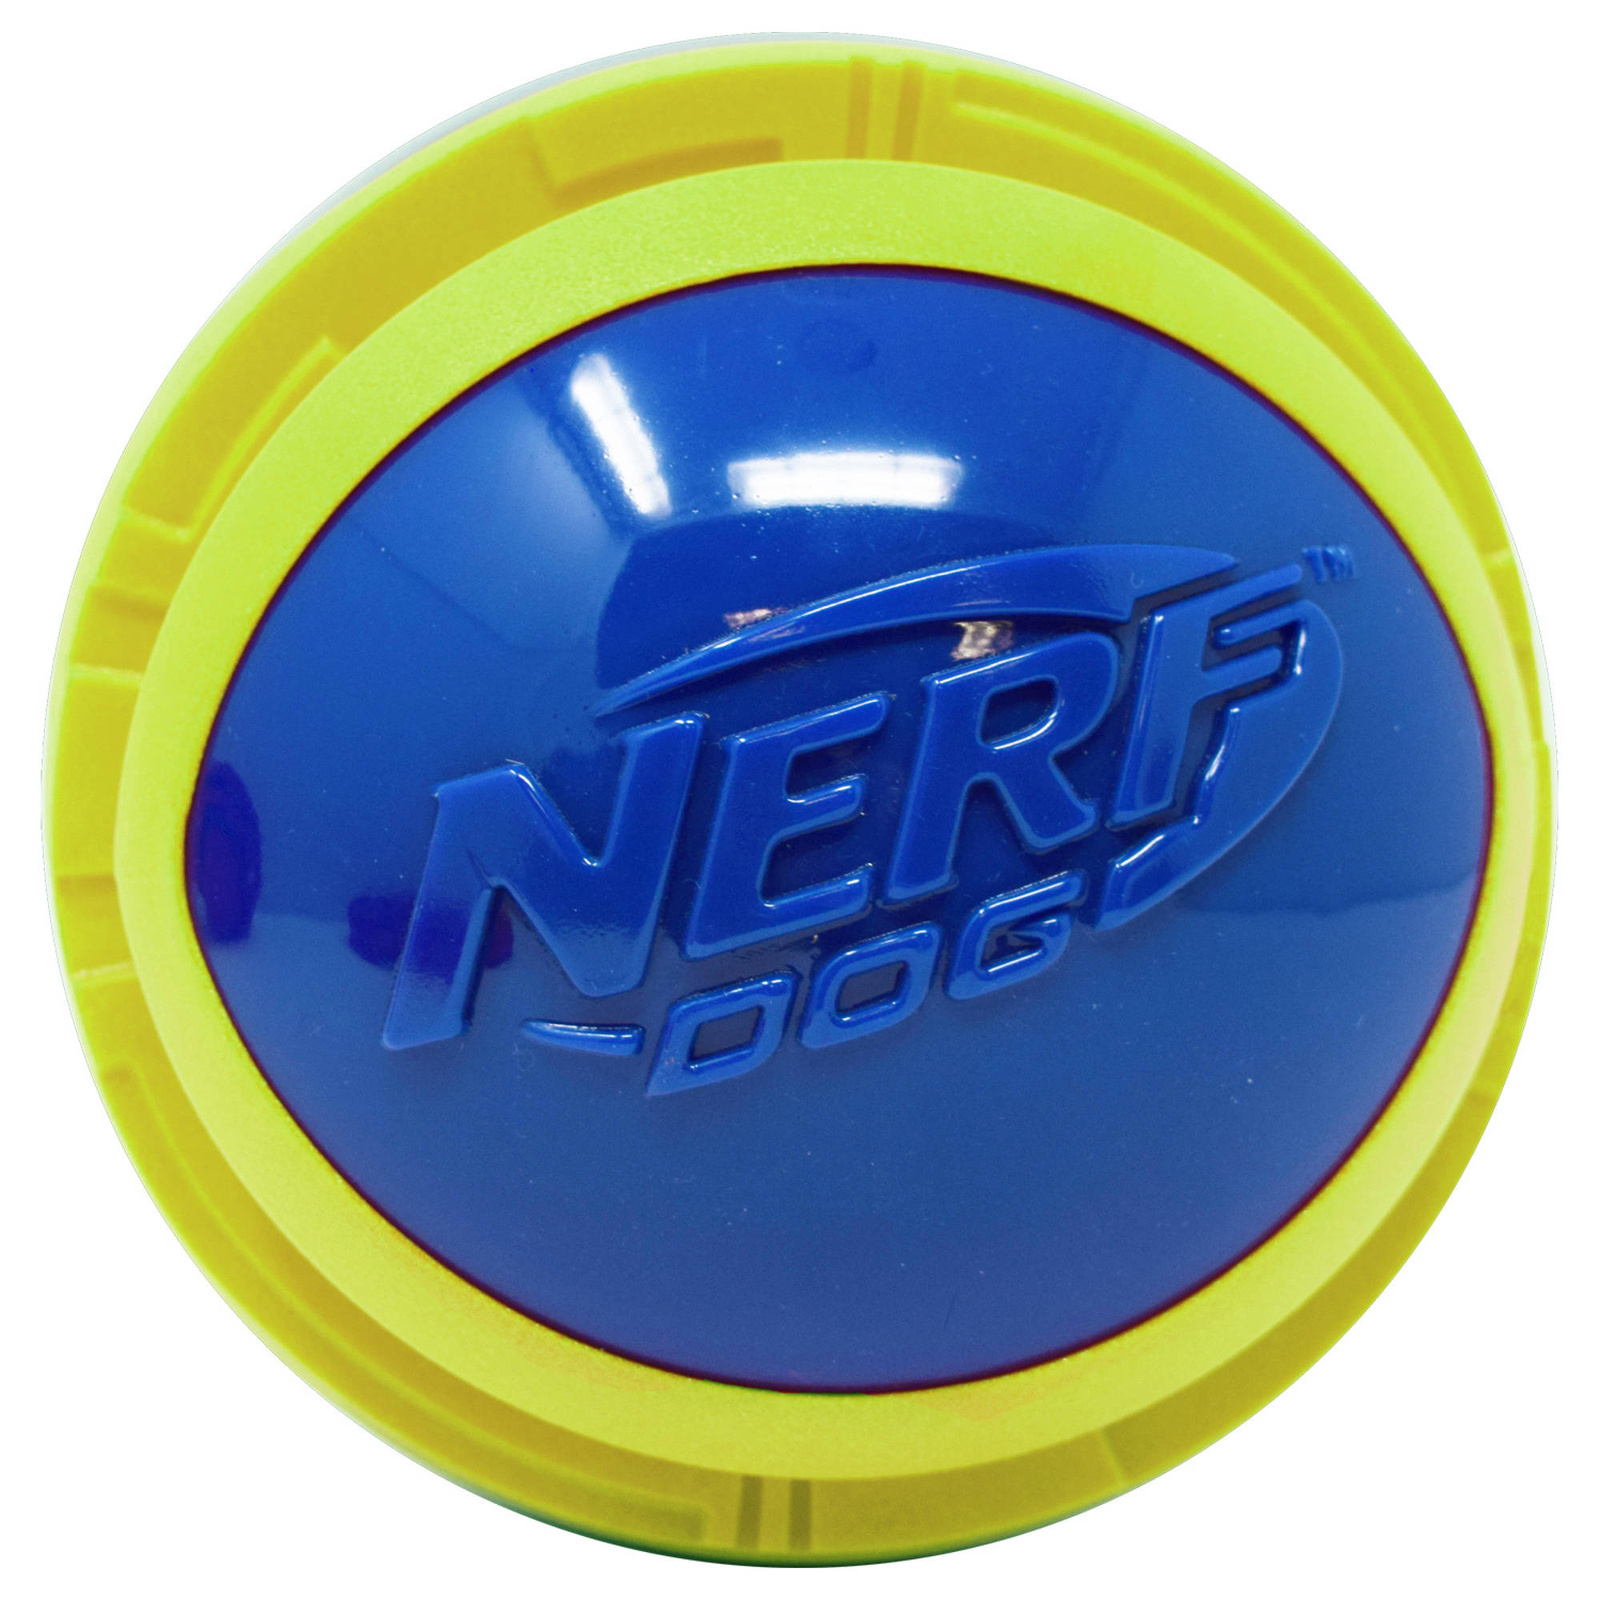 Nerf Nerf мяч из вспененной резины и термопластичной резины,14 см (серия Мегатон), (синий/зеленый) (390 г)